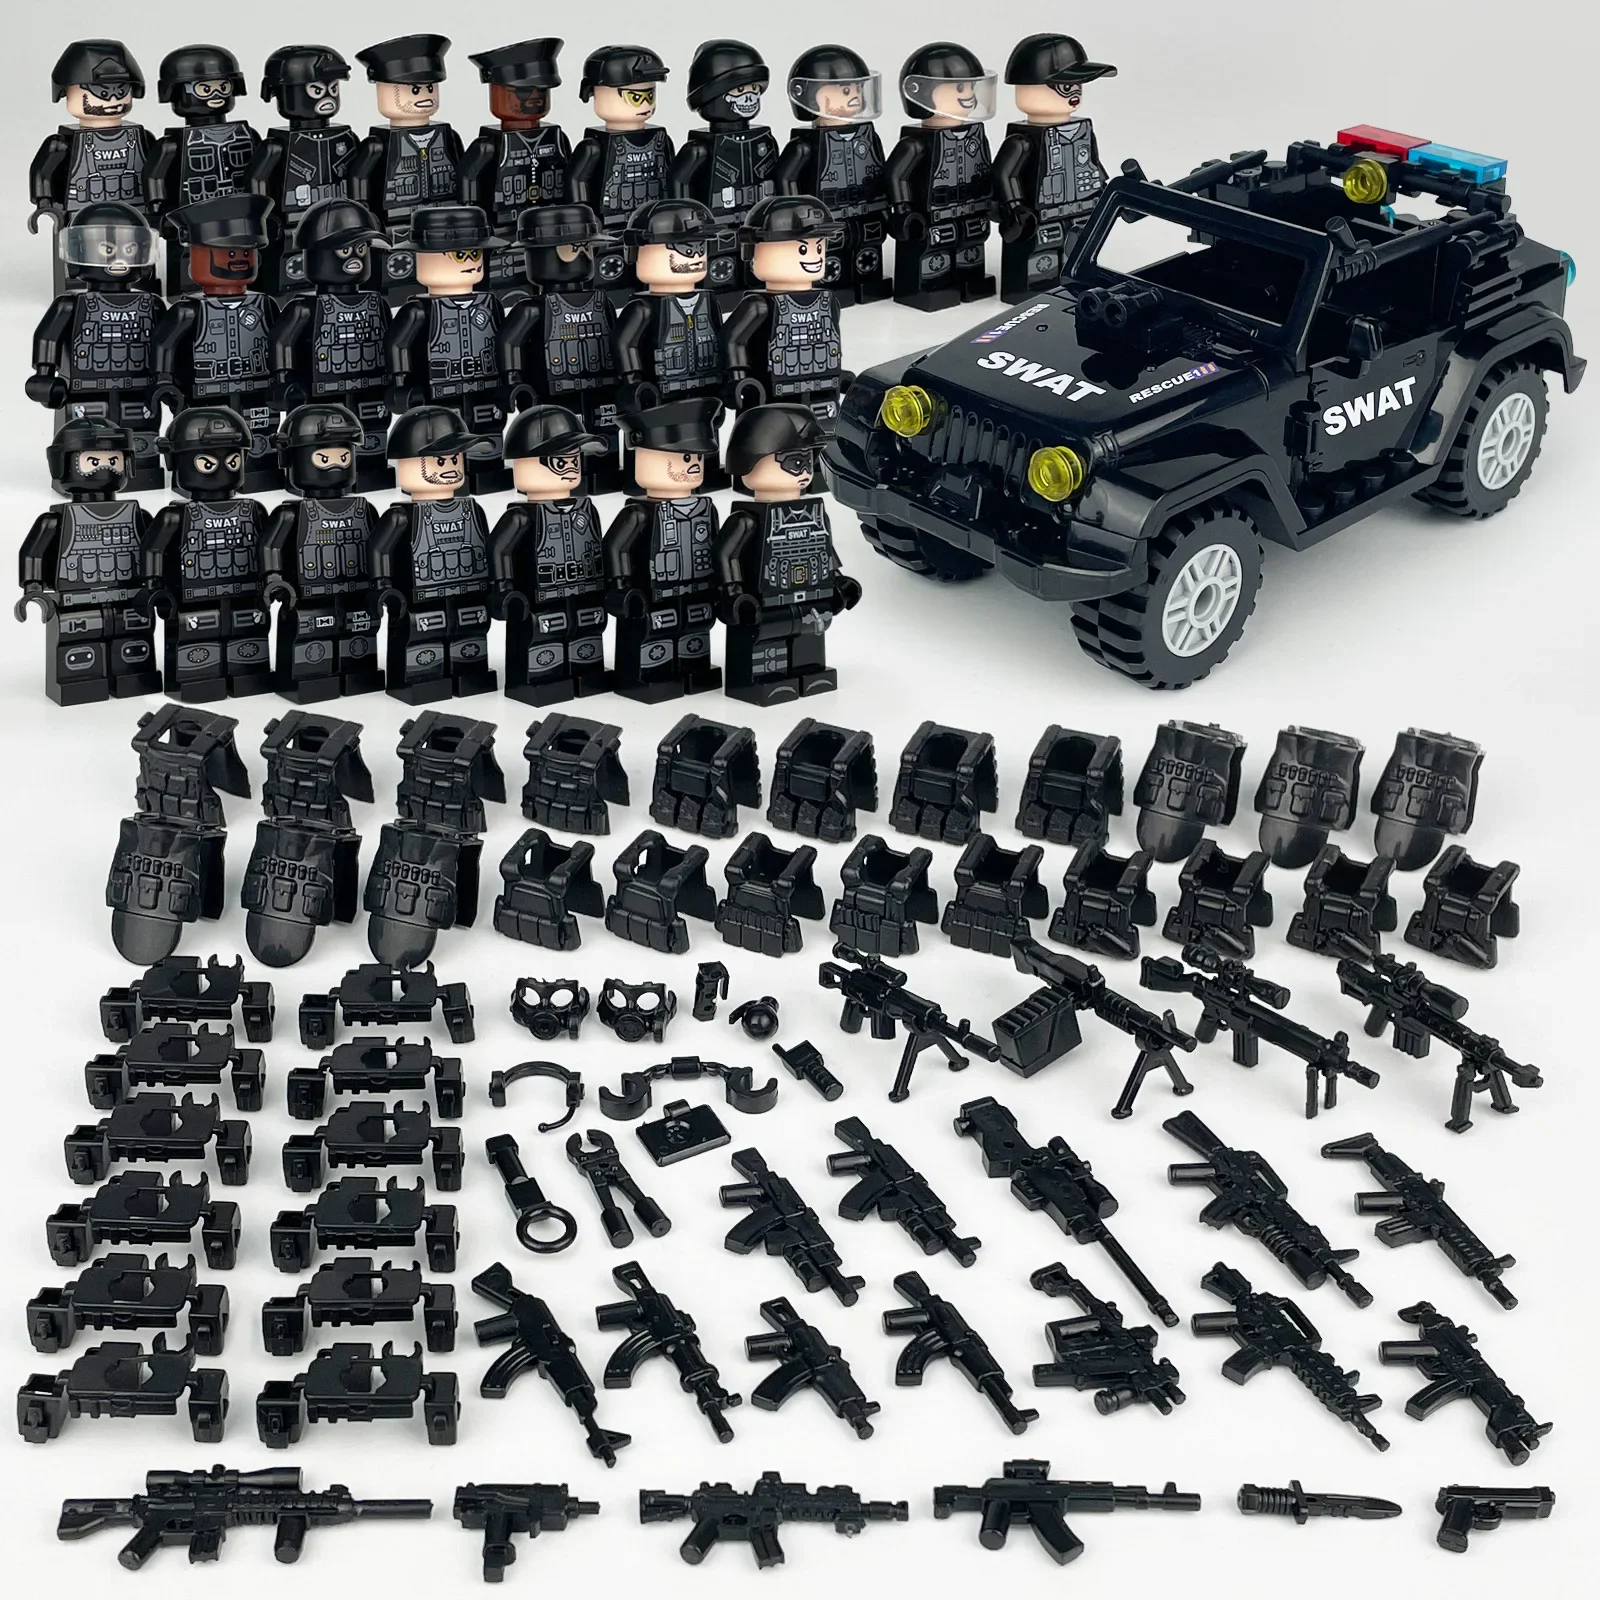 

Второй мировой войны, военные спецназа, современный солдат, полицейский автомобиль, городской спецназ, строительные блоки, мини-игрушка, рождественский подарок